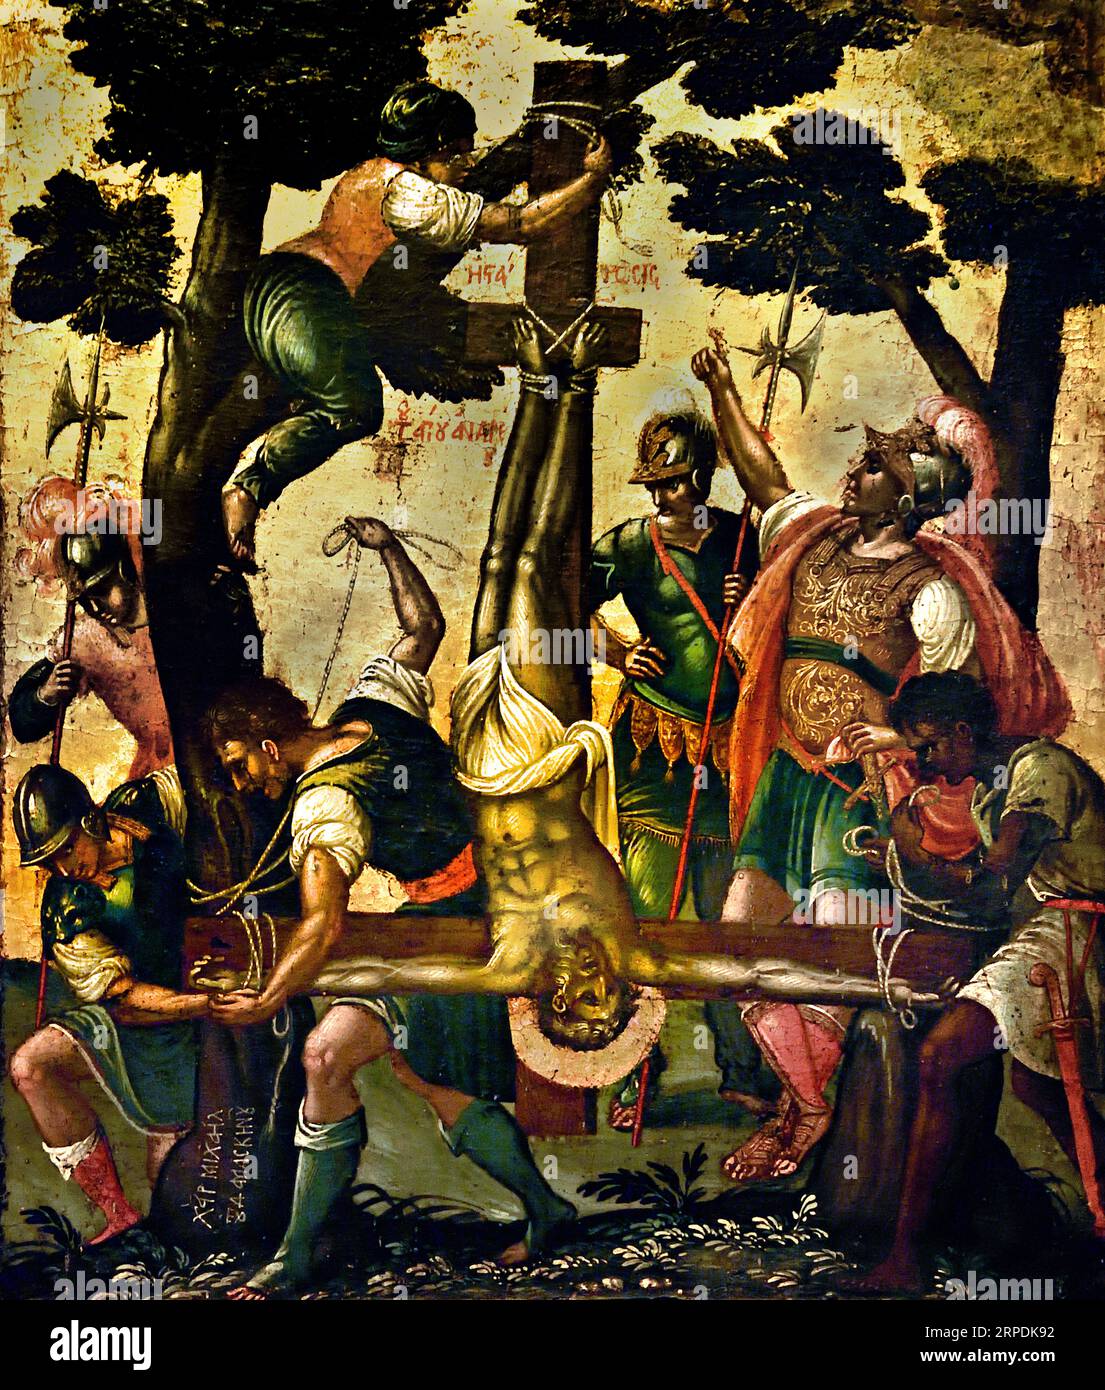 Crucifixion de Saint André Athènes Grèce Musée byzantin Église orthodoxe grecque ( icône ) martyre de Saint André qui a été crucifié à l'envers. Icône de Michael Damaskenos artistes crétois du 16e siècle Banque D'Images